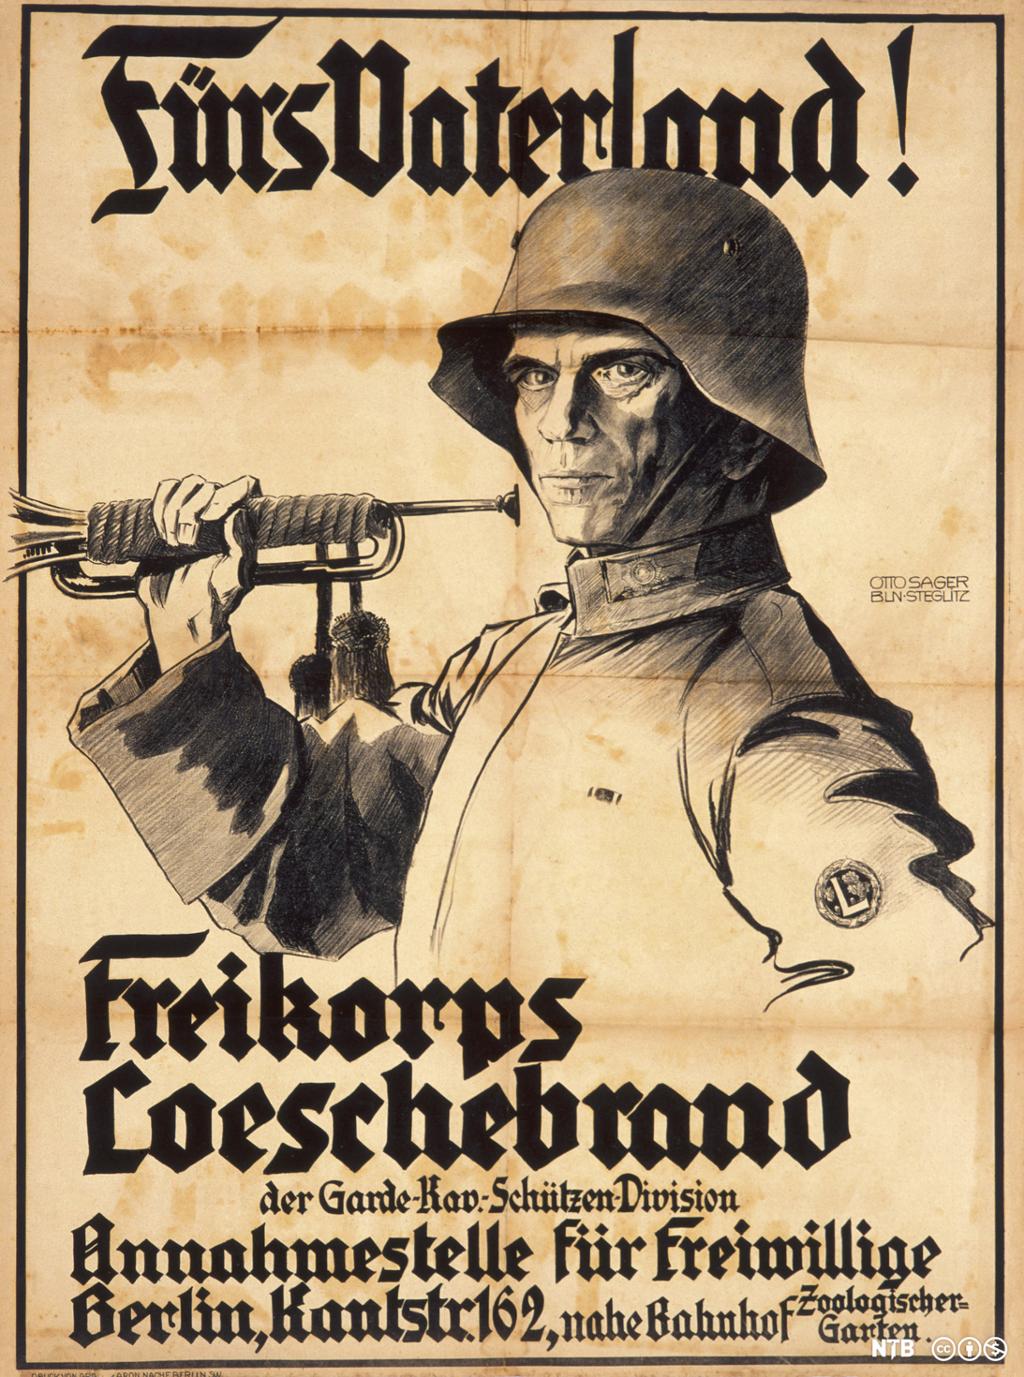 Plakaten viser en tegnet soldat med hjelm og har gotisk skrift som oppfordrer om å verve seg for fedrelandet. Soldaten har en trompet i handa. 